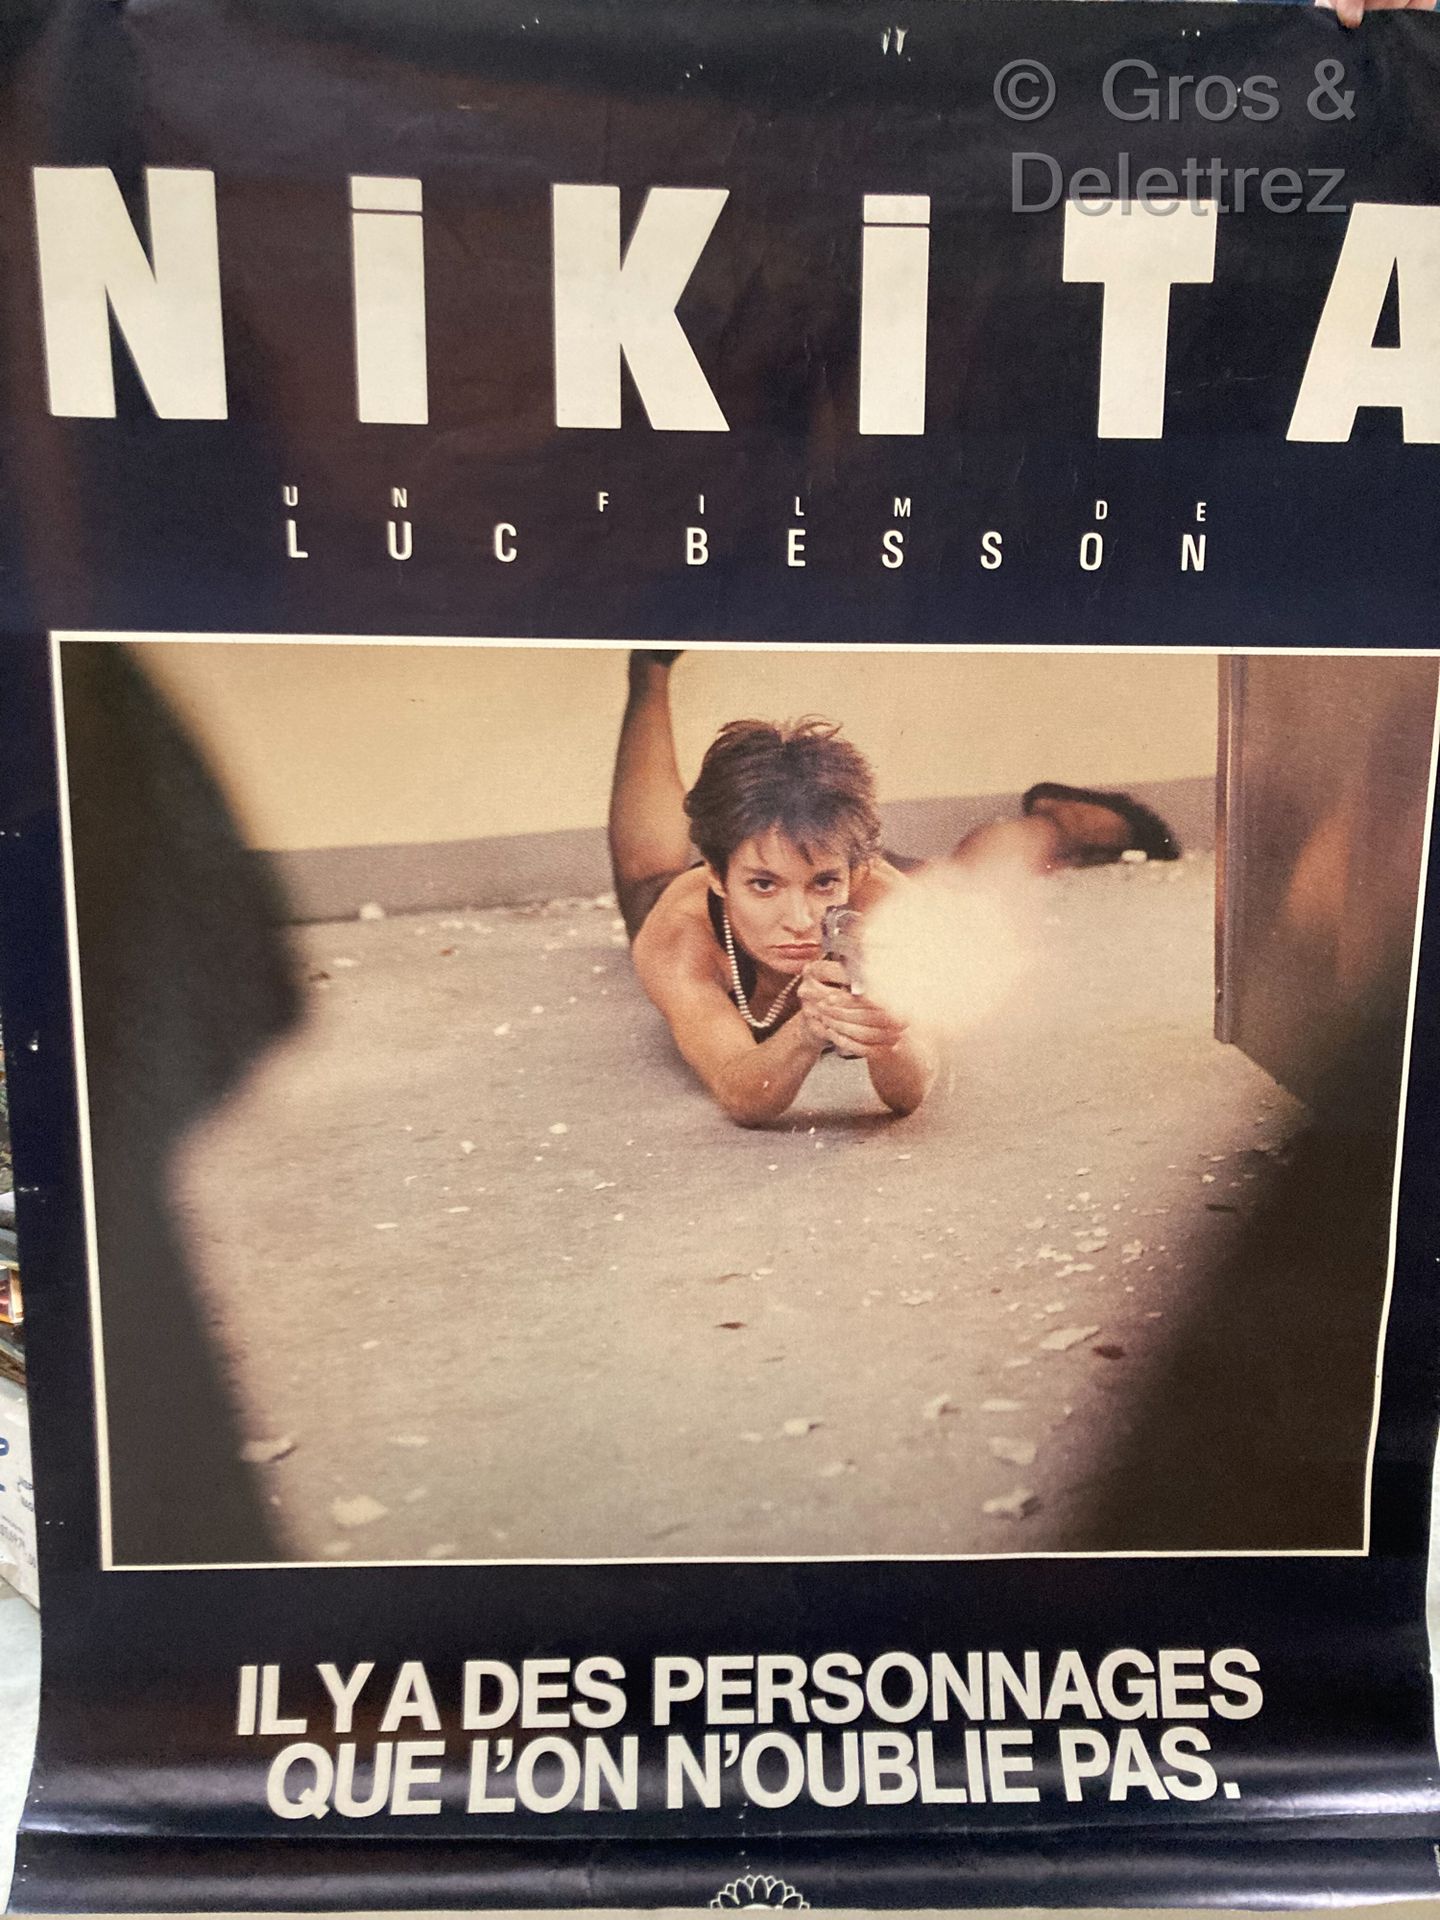 LUC BESSON NIKITA

poster del film

157 x 116 cm. Fori